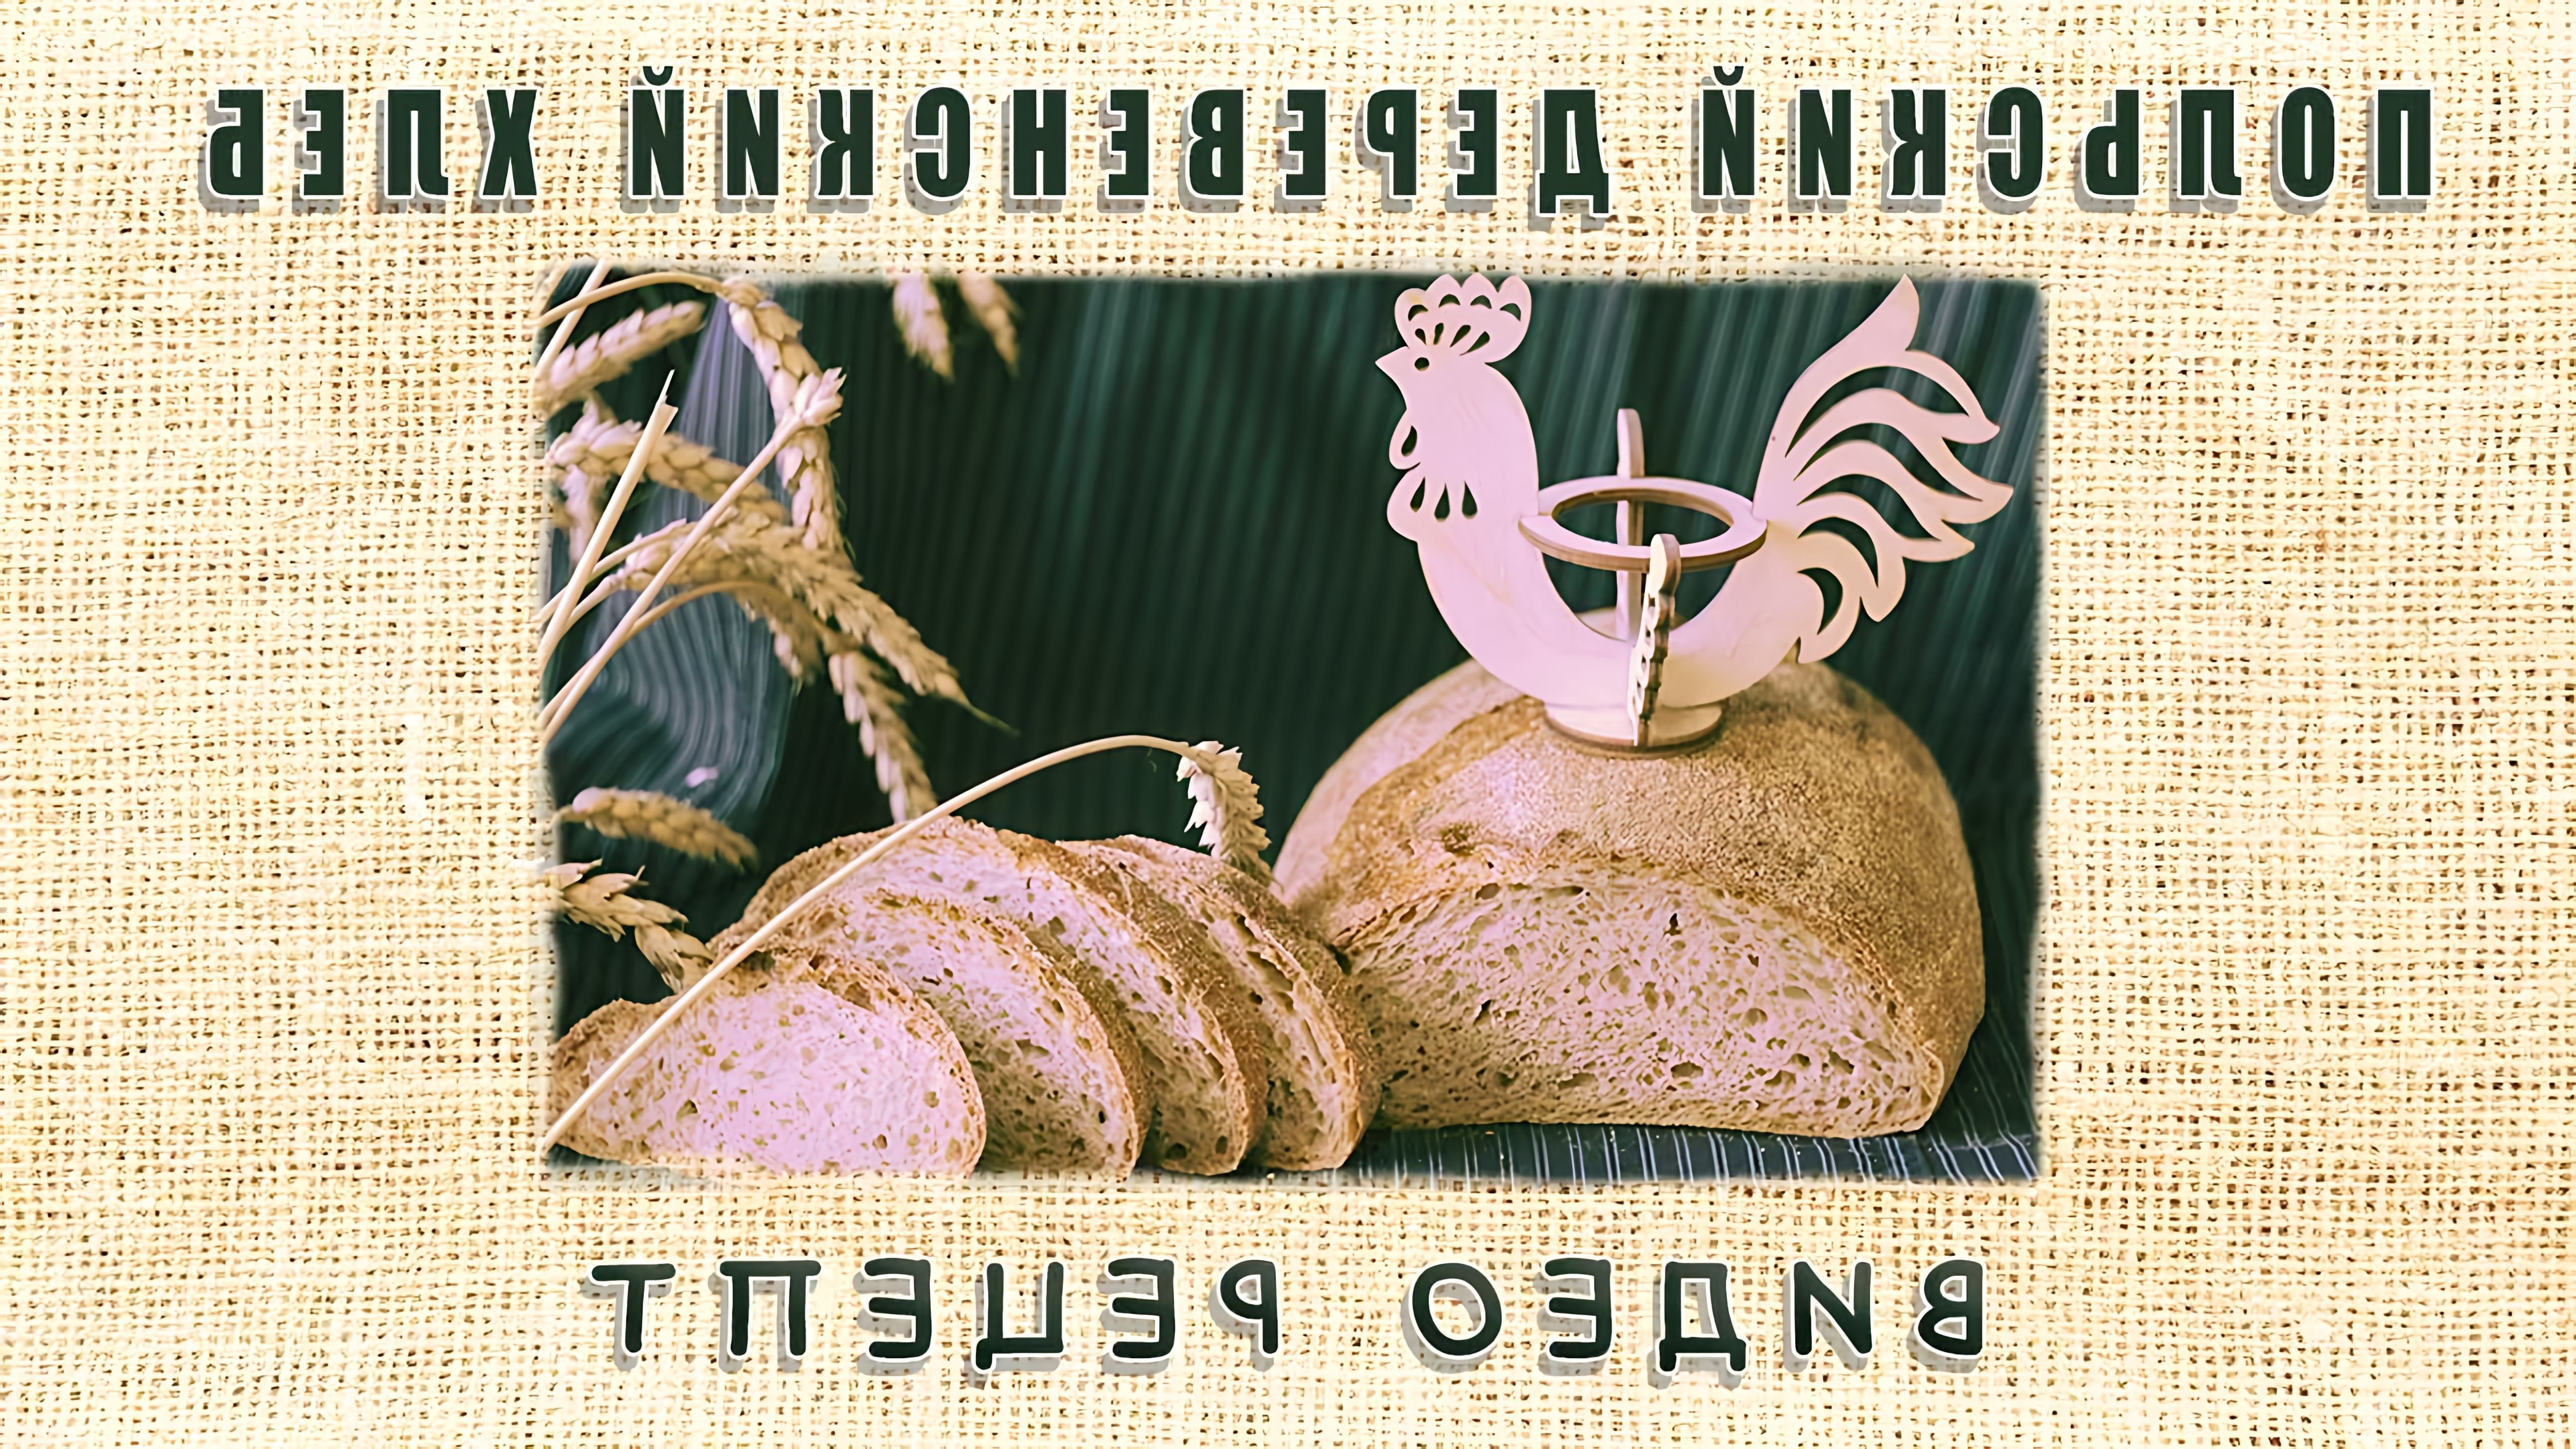 В данном видео демонстрируется процесс приготовления польского деревенского хлеба на ржаной закваске